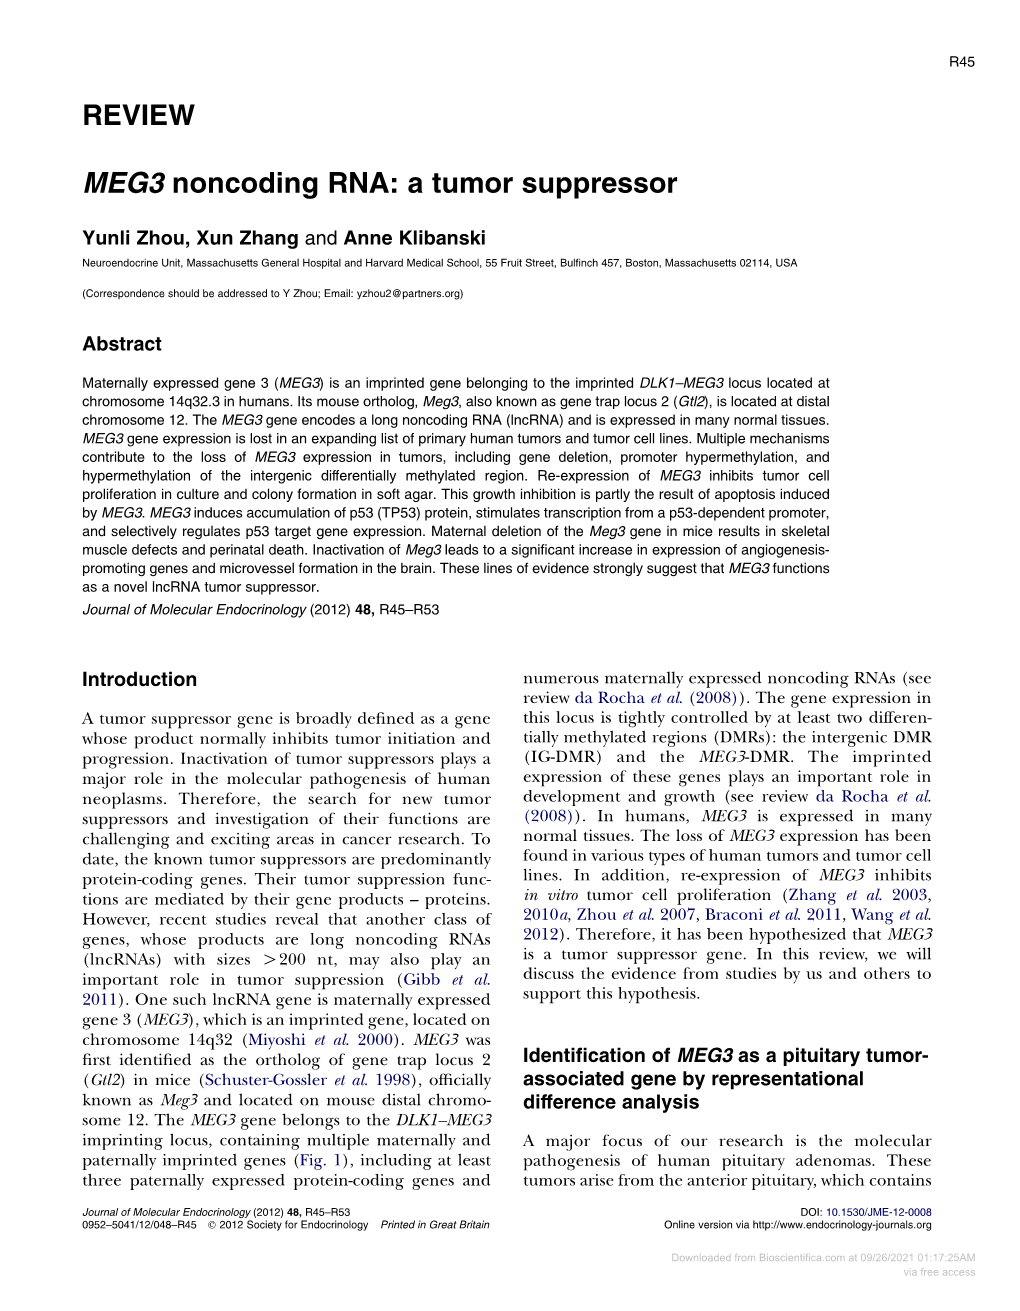 REVIEW MEG3 Noncoding RNA: a Tumor Suppressor